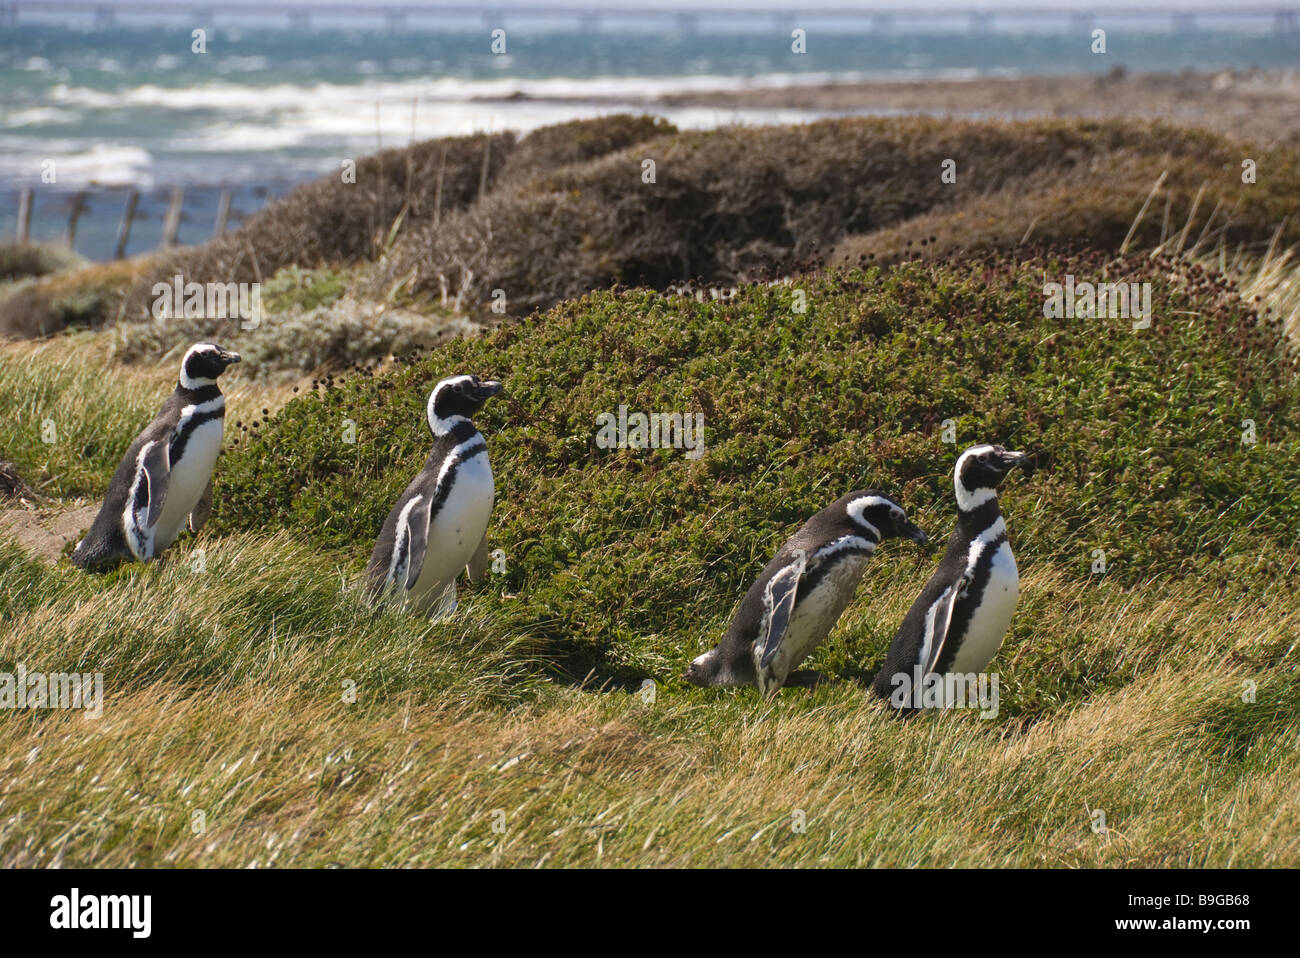 Elk198 4169 Chile Patagonia Seno Otway Penguin Reserve Magellanic penguins Spheniscus magallanicus Stock Photo